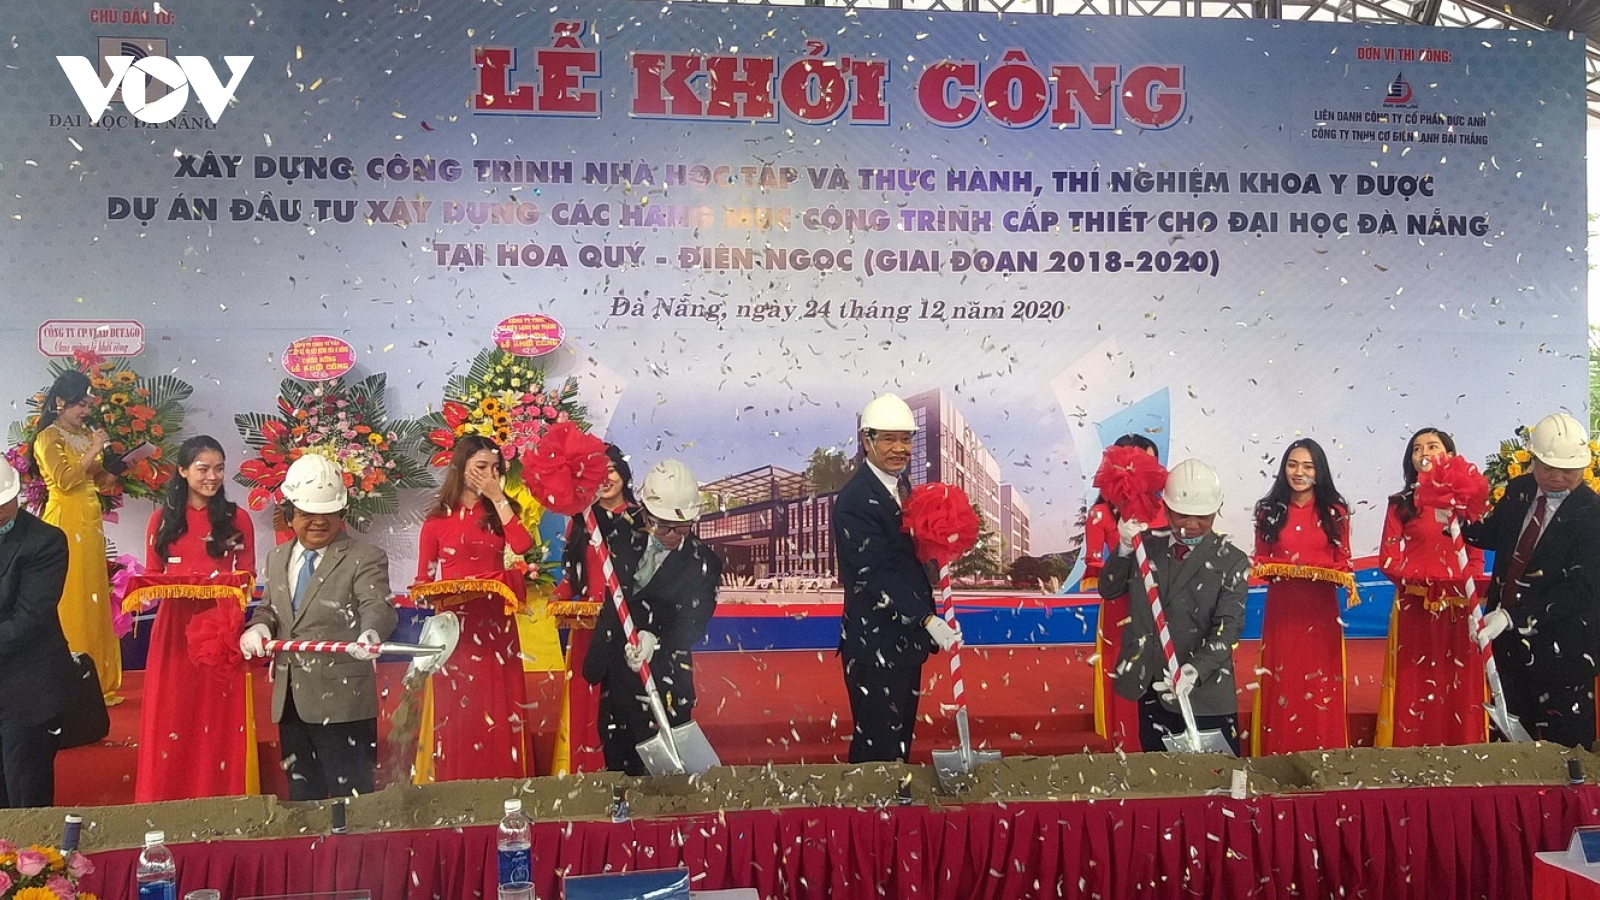 Khởi công xây dựng các công trình cấp thiết cho Làng Đại học Đà Nẵng